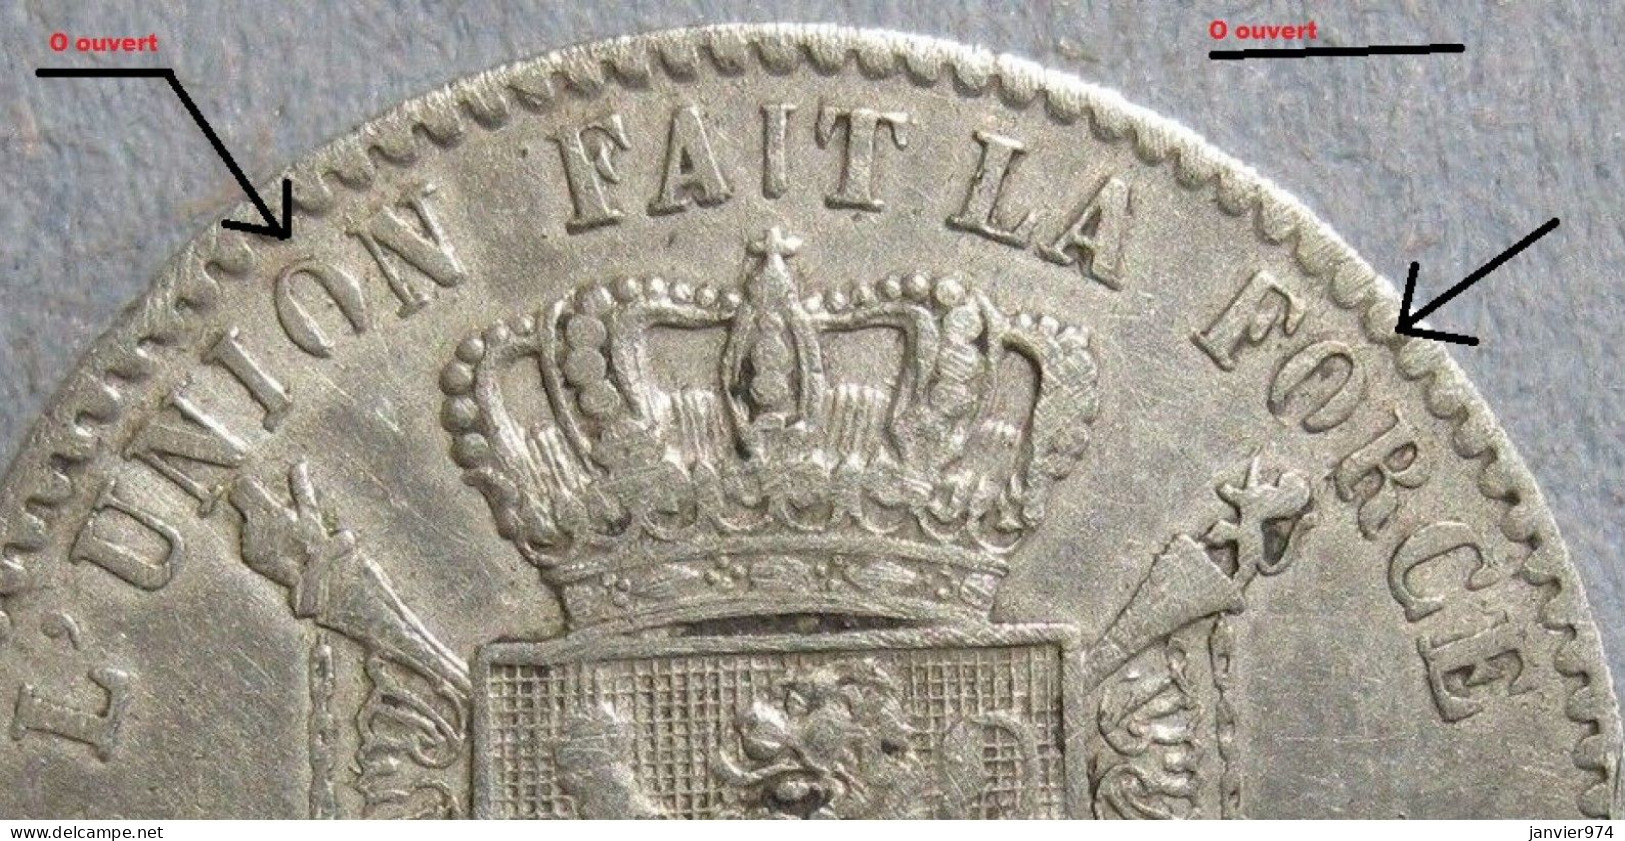 Inédit - 1 Franc 1869 Variété O Ouverts , Léopold II. Unique, Inconnue Dans Le Livre De J. DE MEY Et G. PAUWELS - 1 Franc